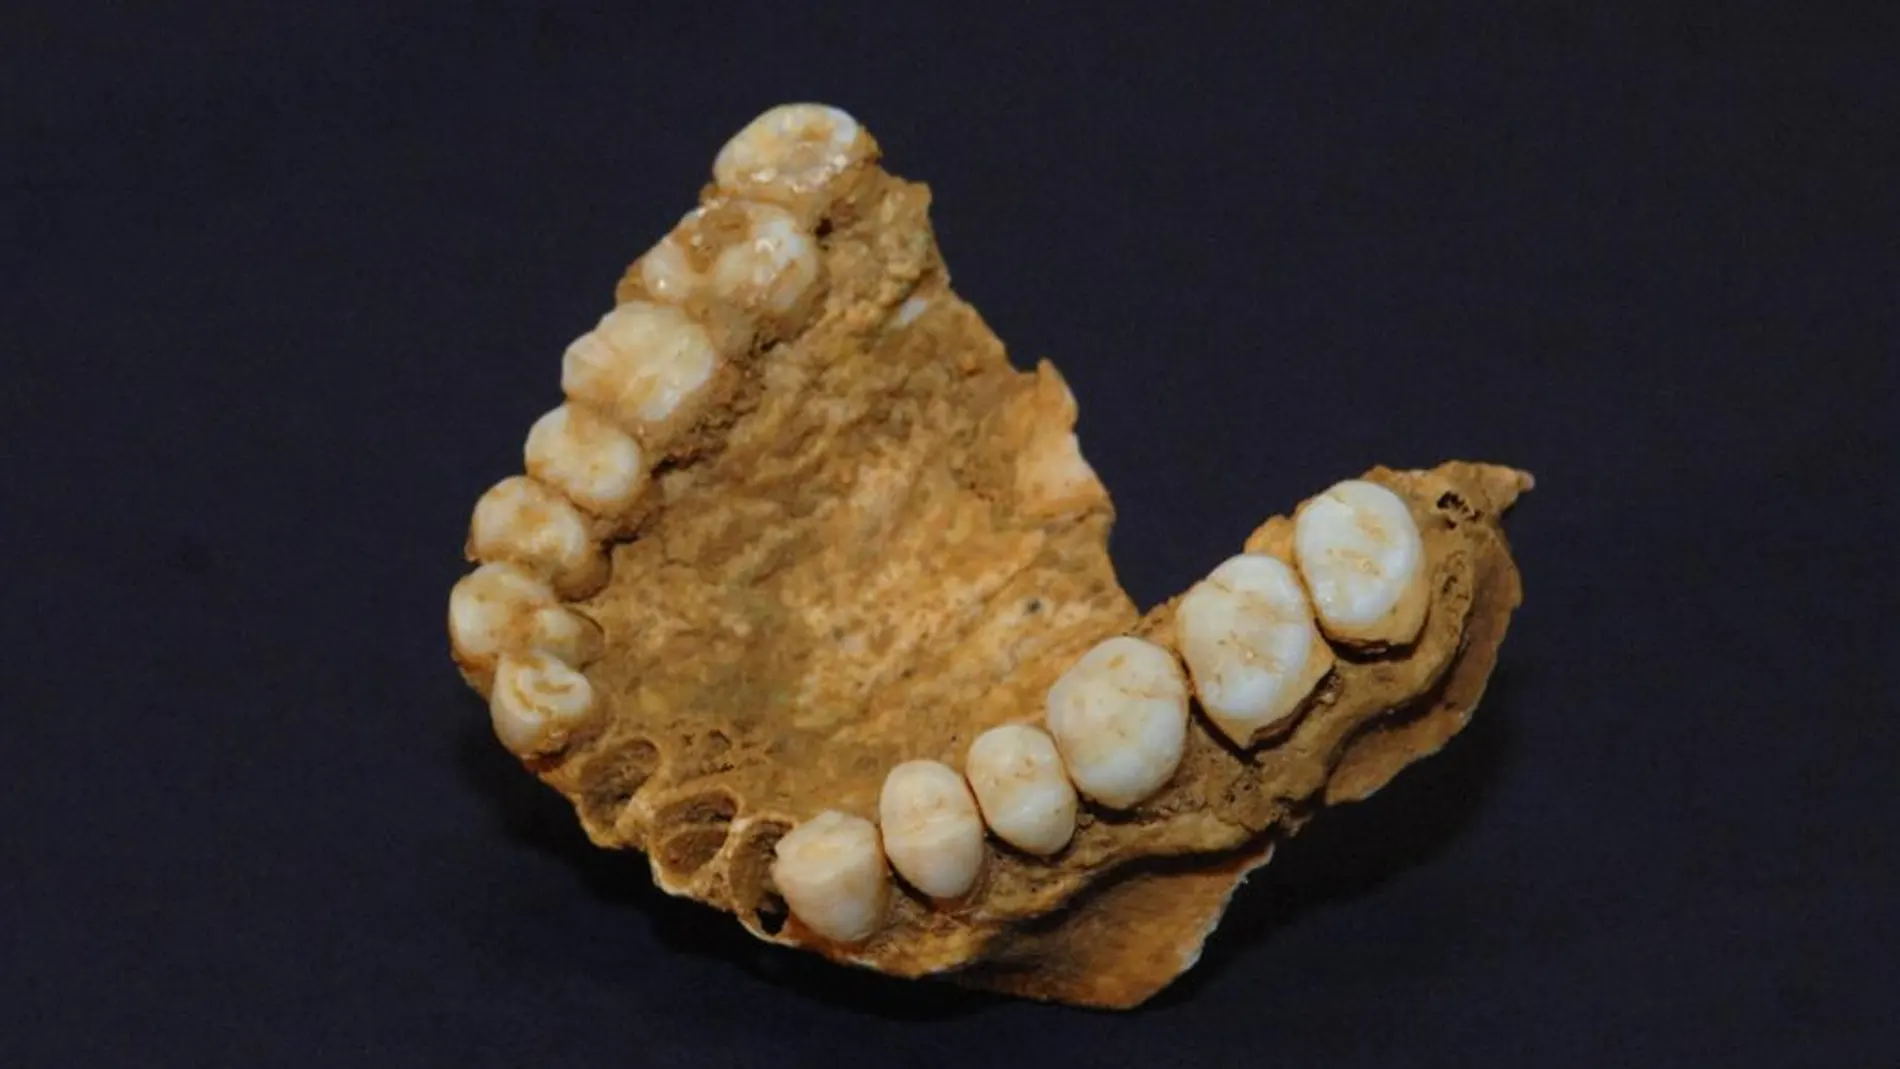 Un maxilar de un neandertal hallado en el yacimiento de la cueva del Sidrón, en Asturias